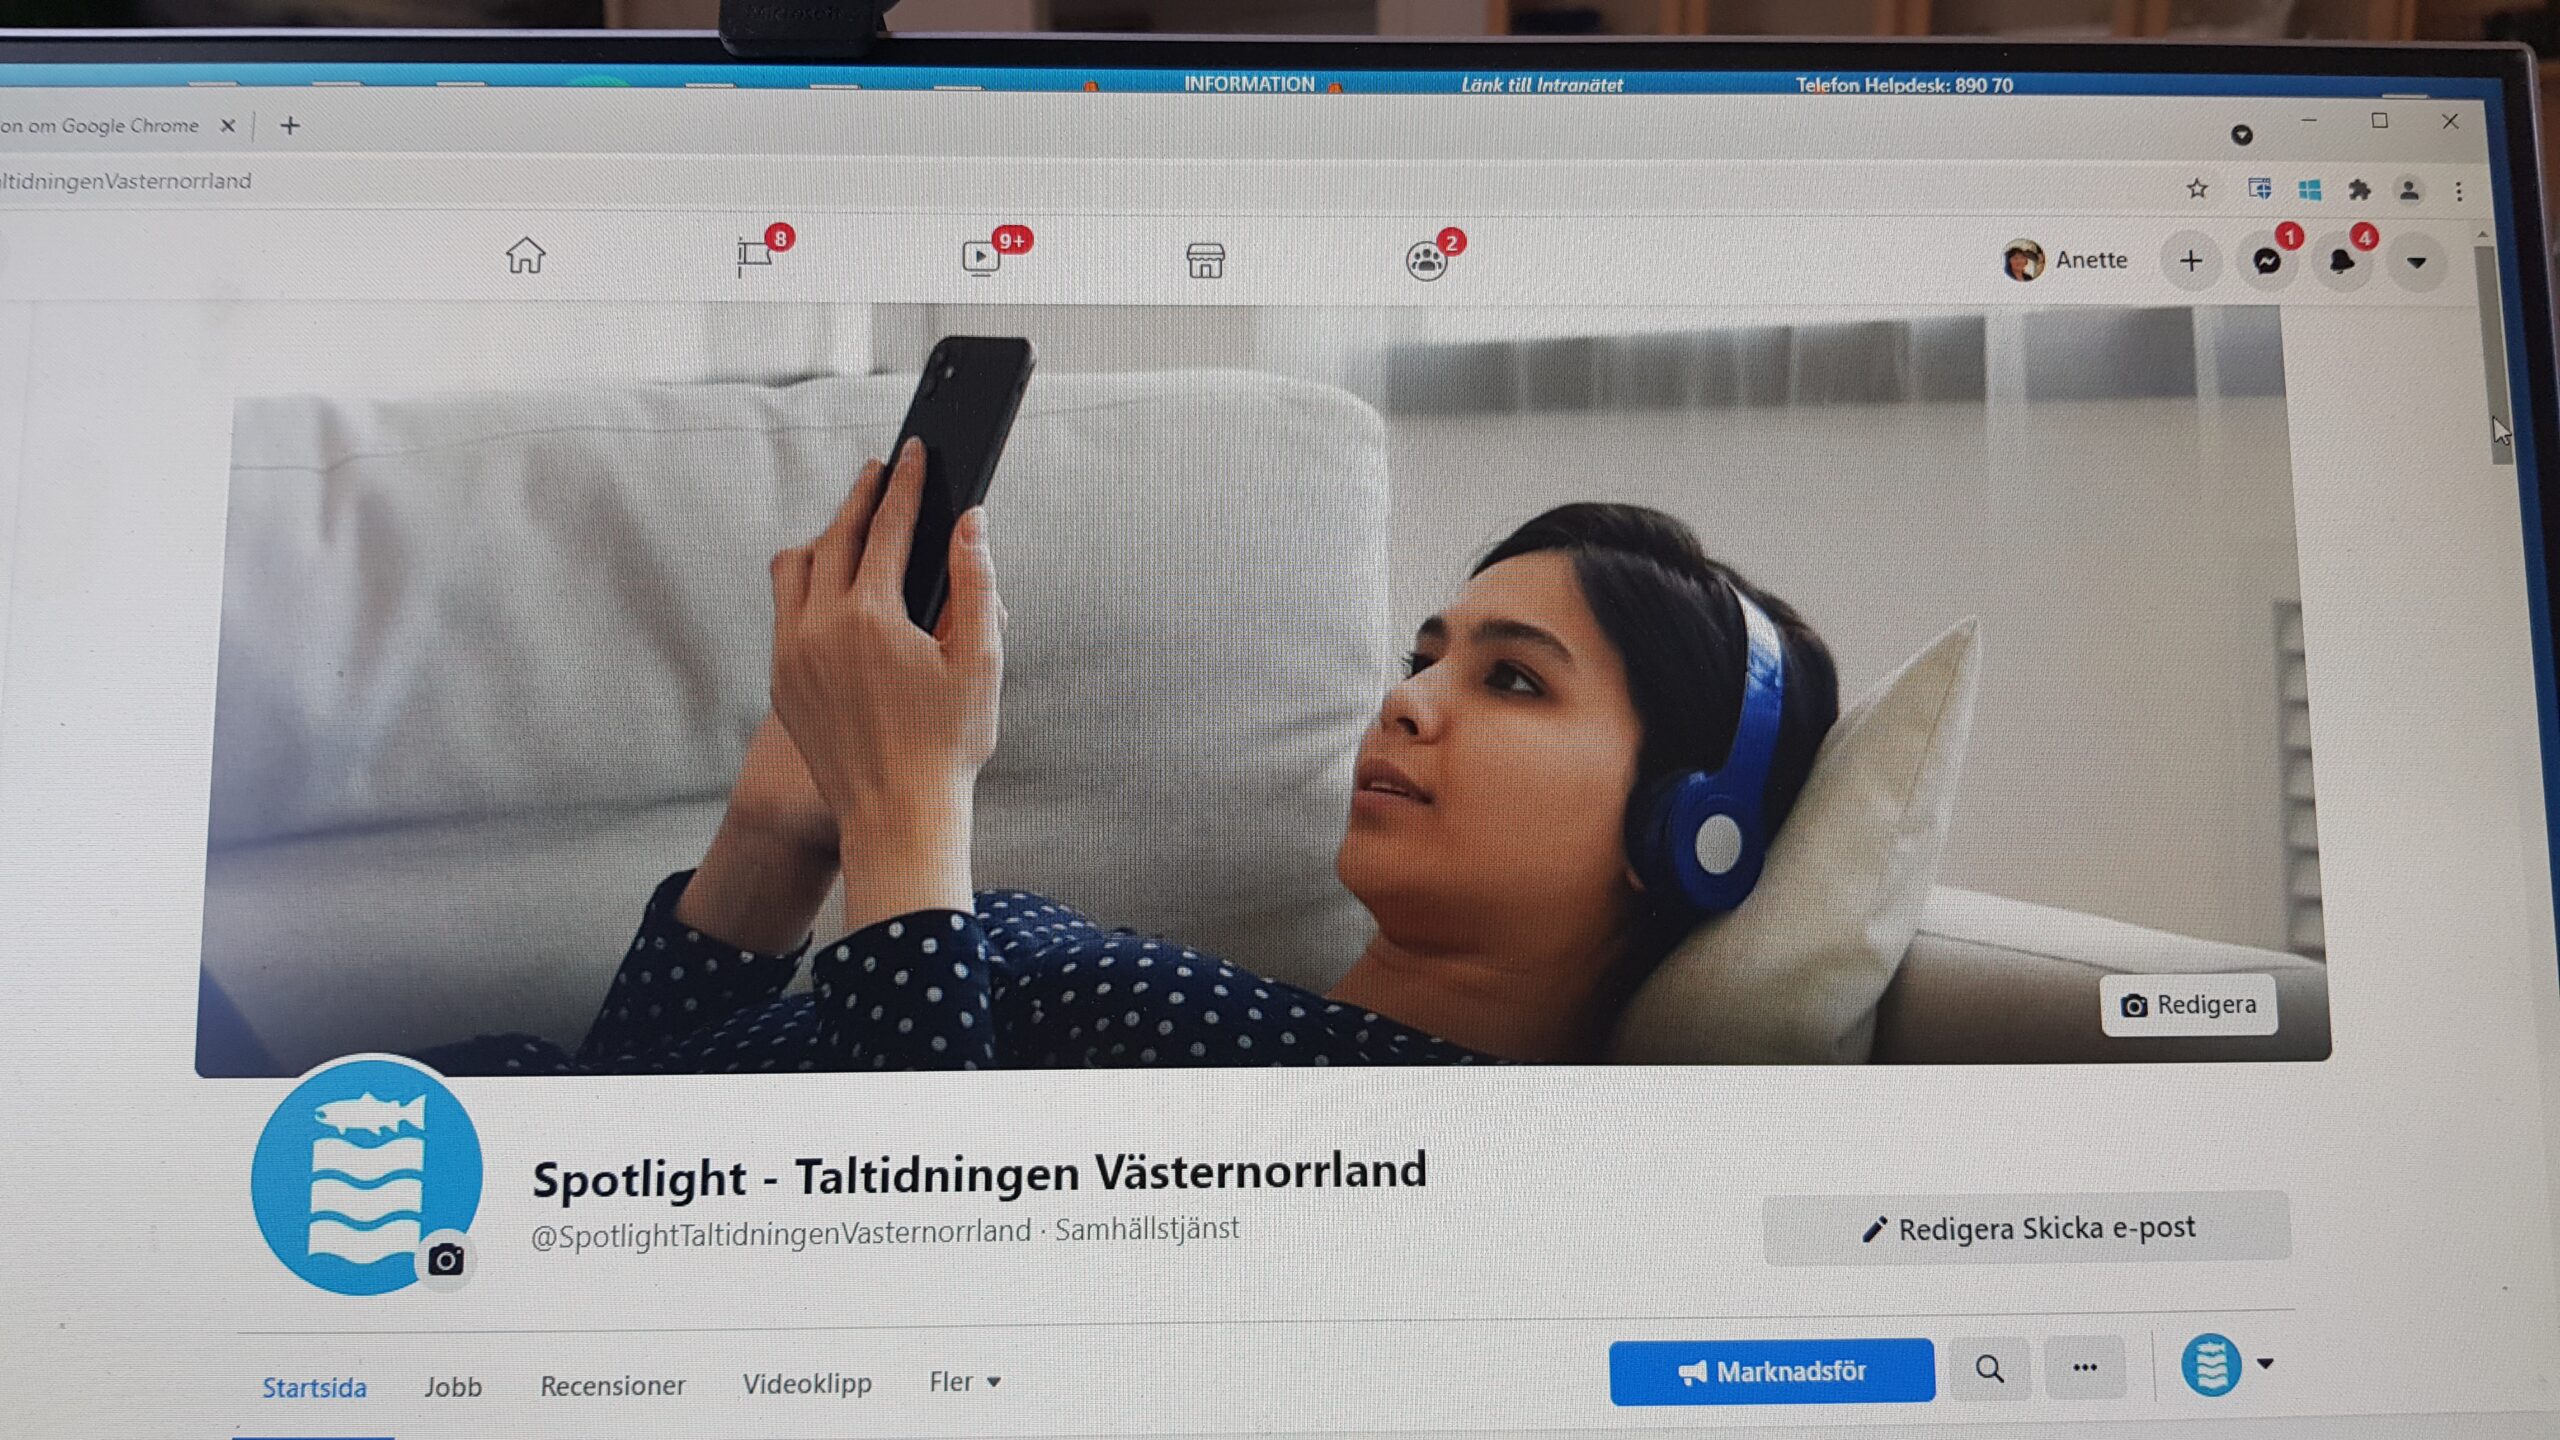 Frontbilden för Spotlight på Facebook. En ung kvinna ligger på en soffa med hörlurar kopplade till mobilen och lyssnar på Spotlight